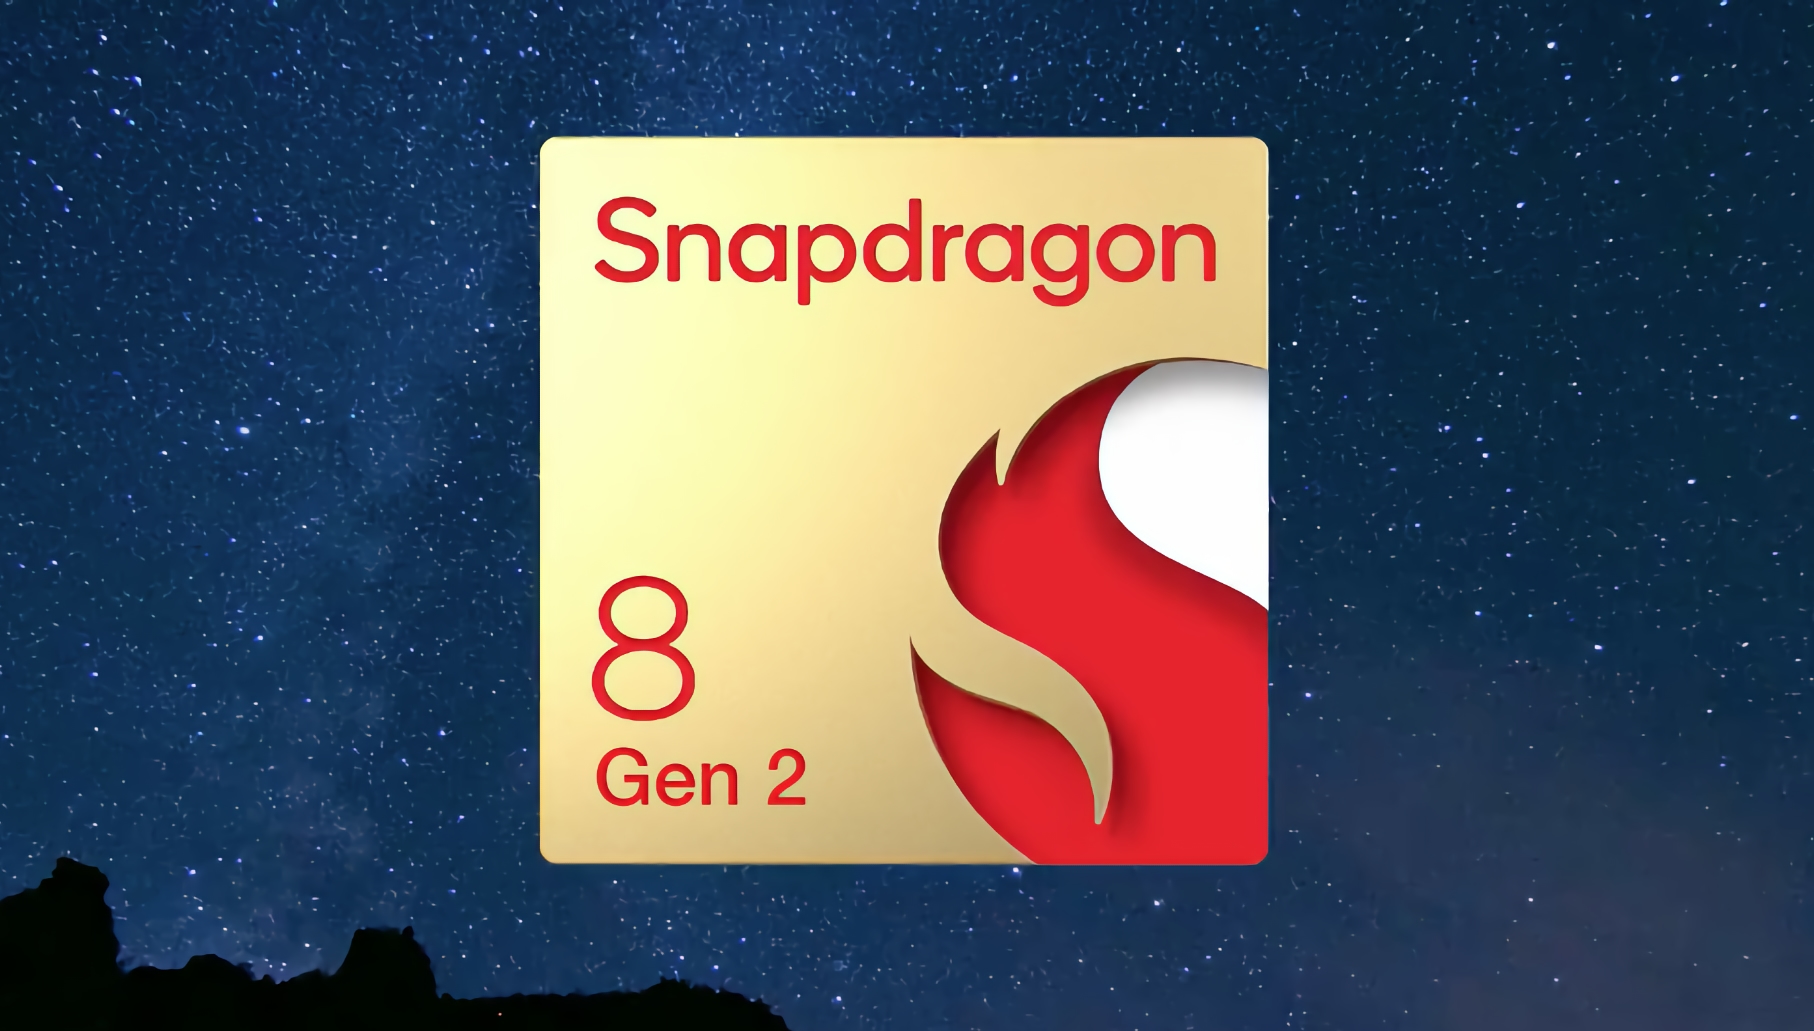 proceso de 4nm, más potencia y una nueva disposición de los núcleos: han aparecido en Internet las especificaciones del chip Snapdragon 8 Gen 2